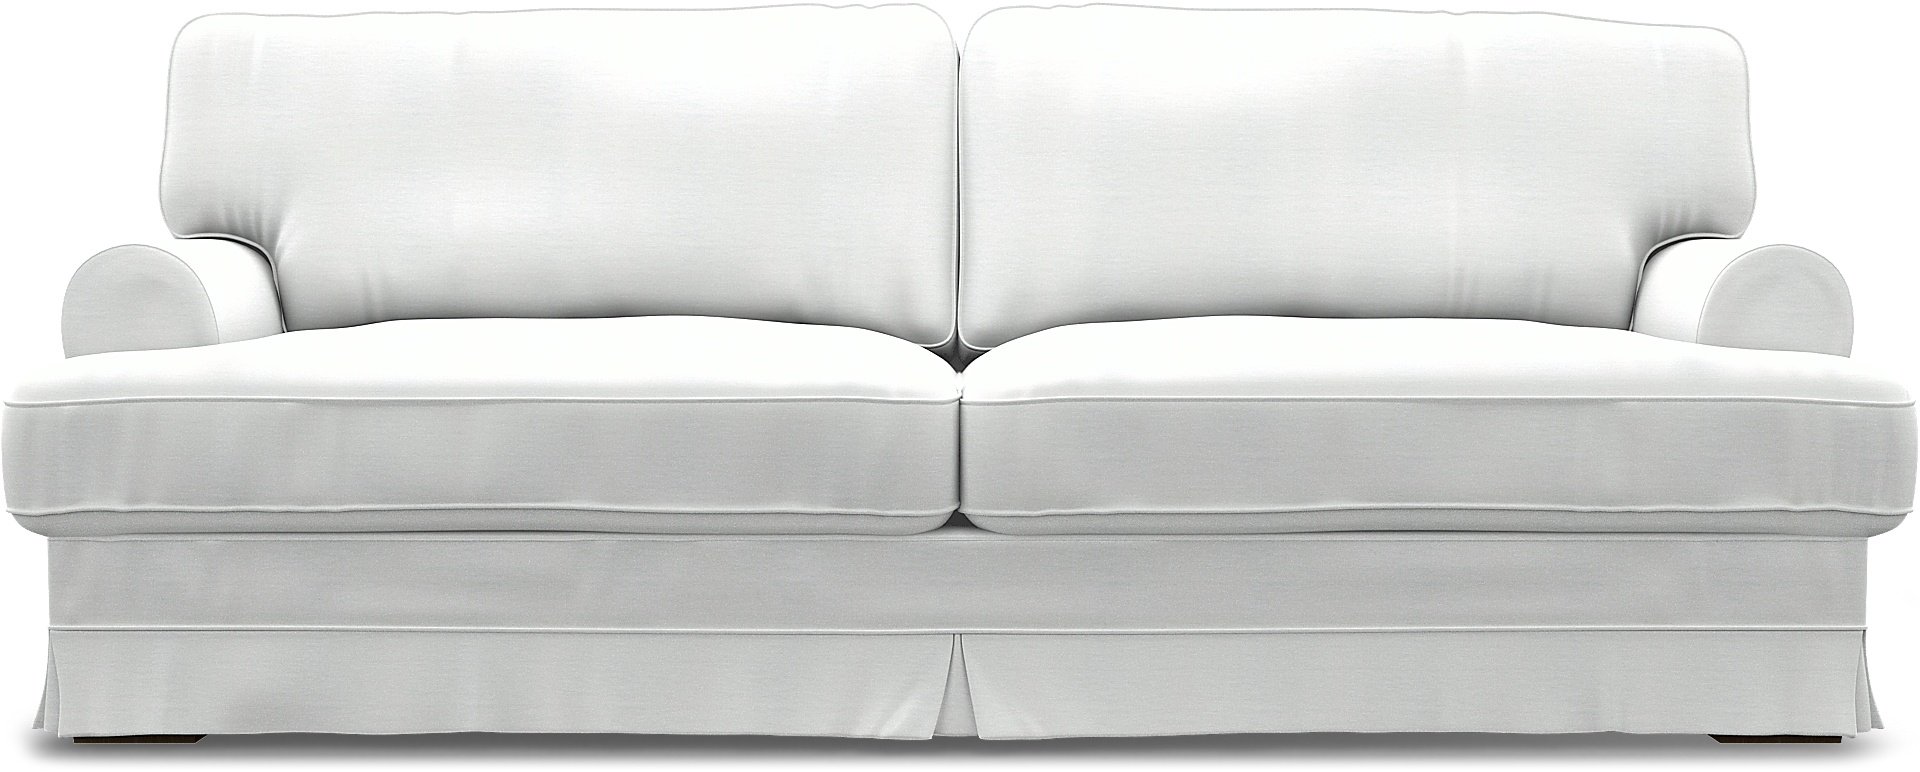 IKEA - Ekeskog 3 Seater Sofa Cover, White, Linen - Bemz